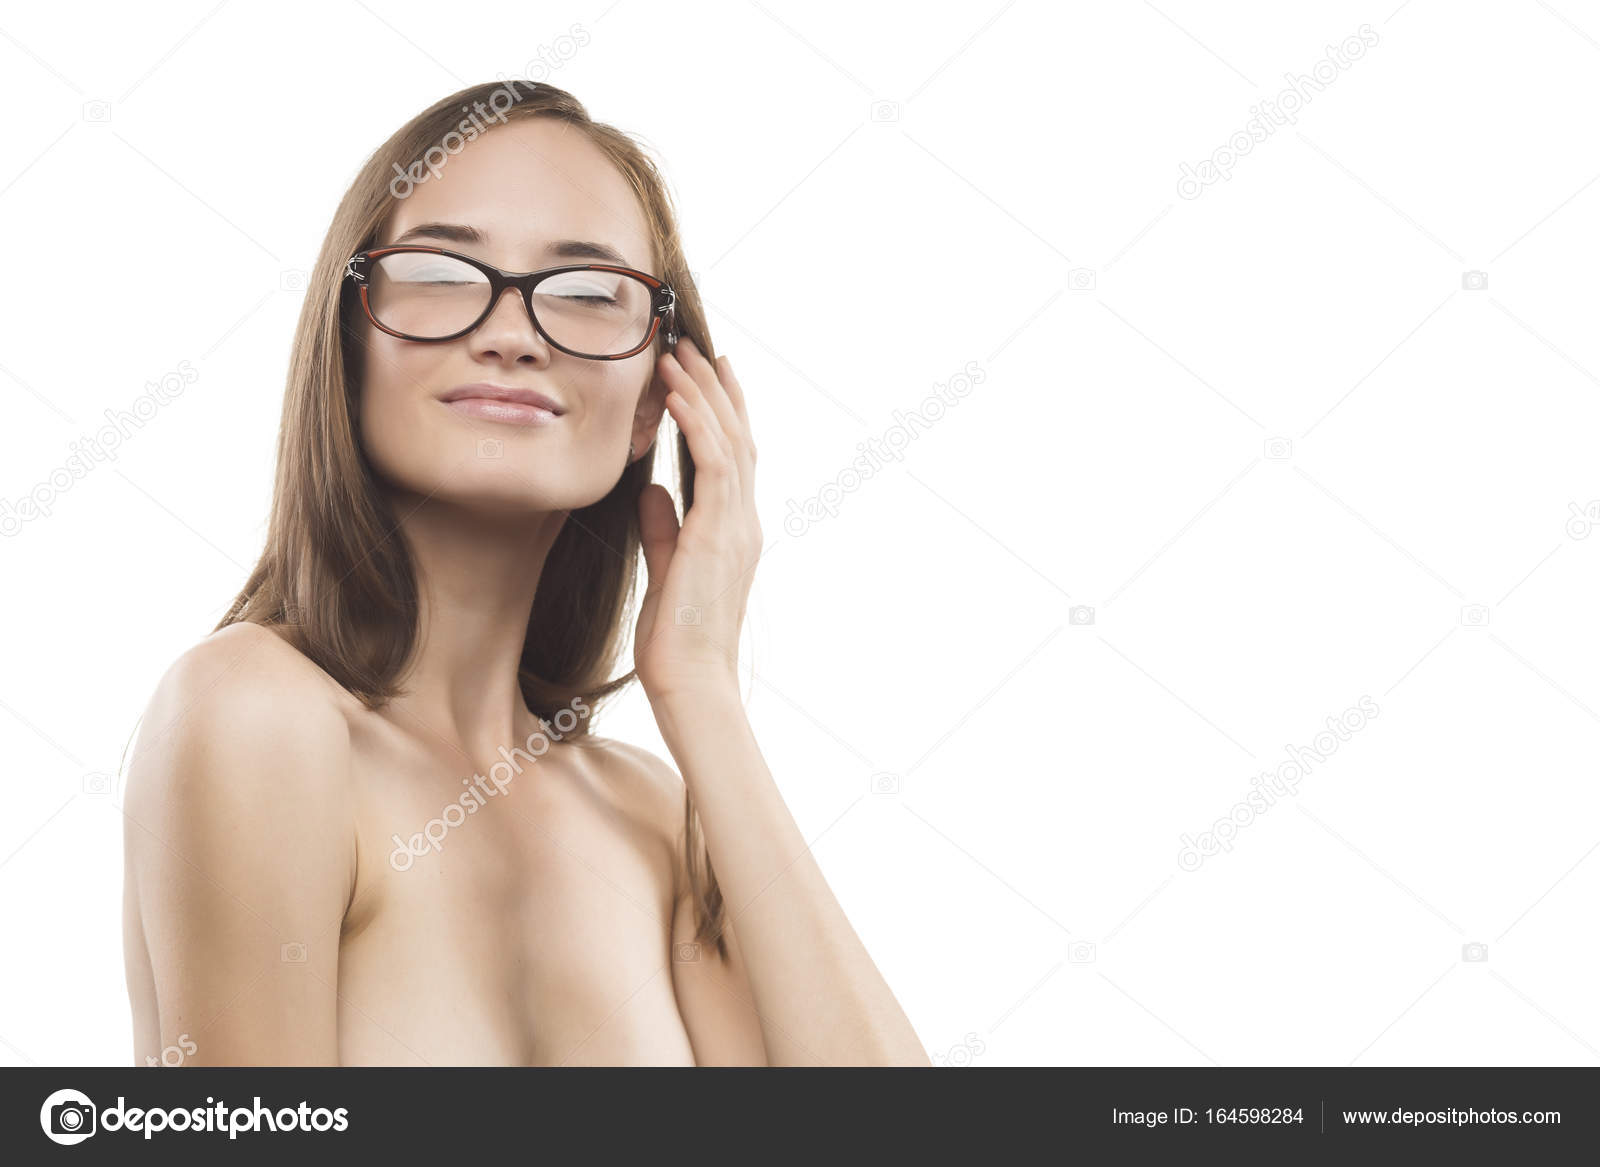 Lena paul nude